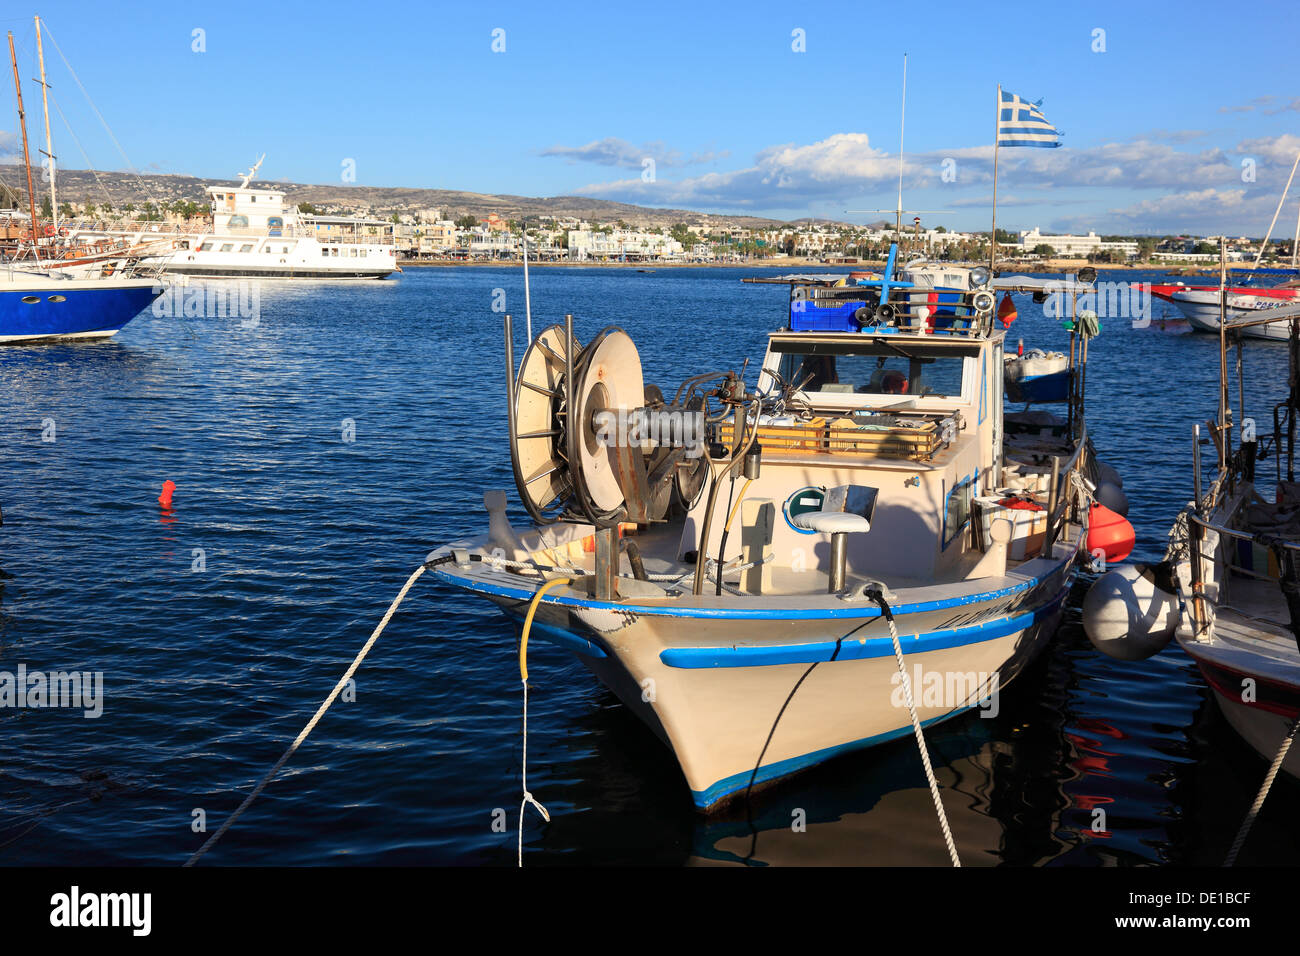 Zypern, Paphos Stadt, Gazibaf, Boote, Angelboote/Fischerboote im Hafen Stockfoto